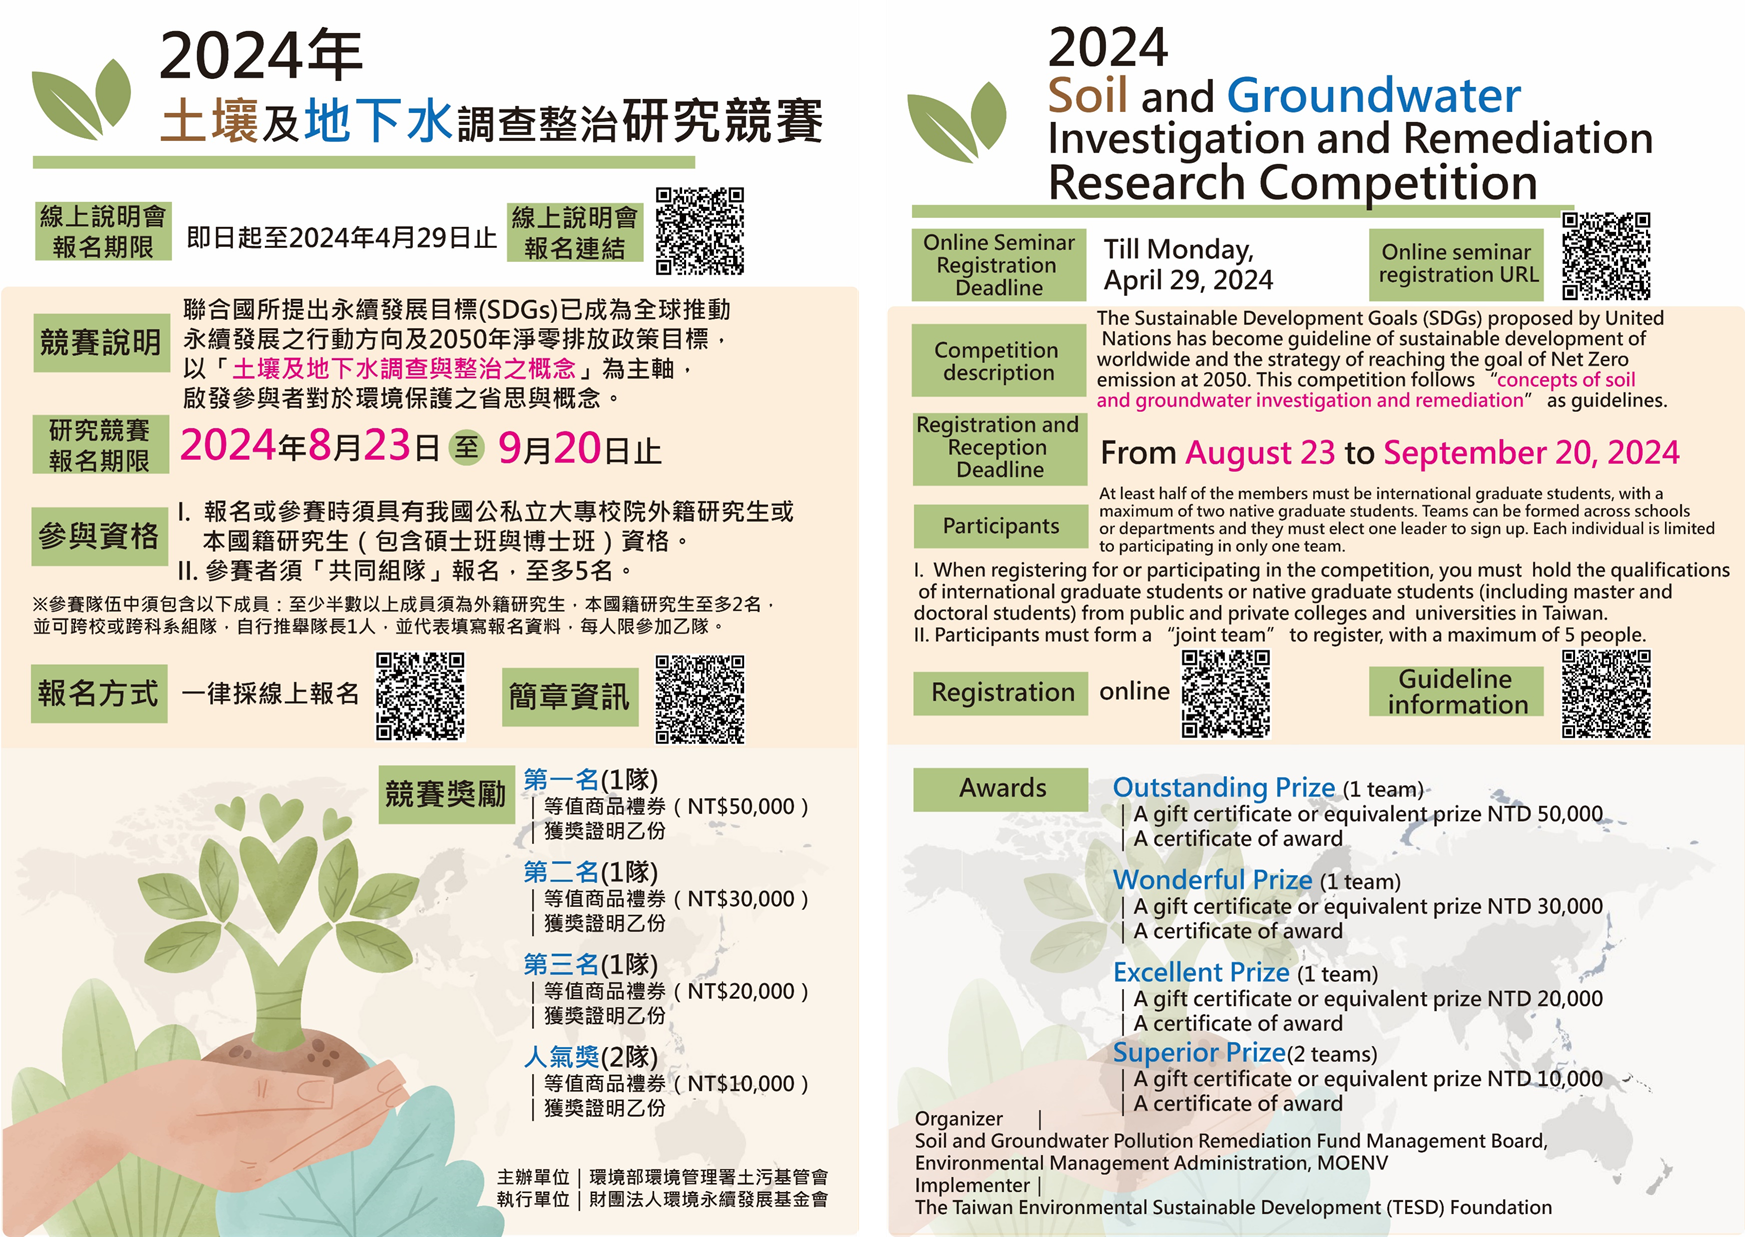 「2024年土壤及地下水調查整治研究競賽」海報(中英文)